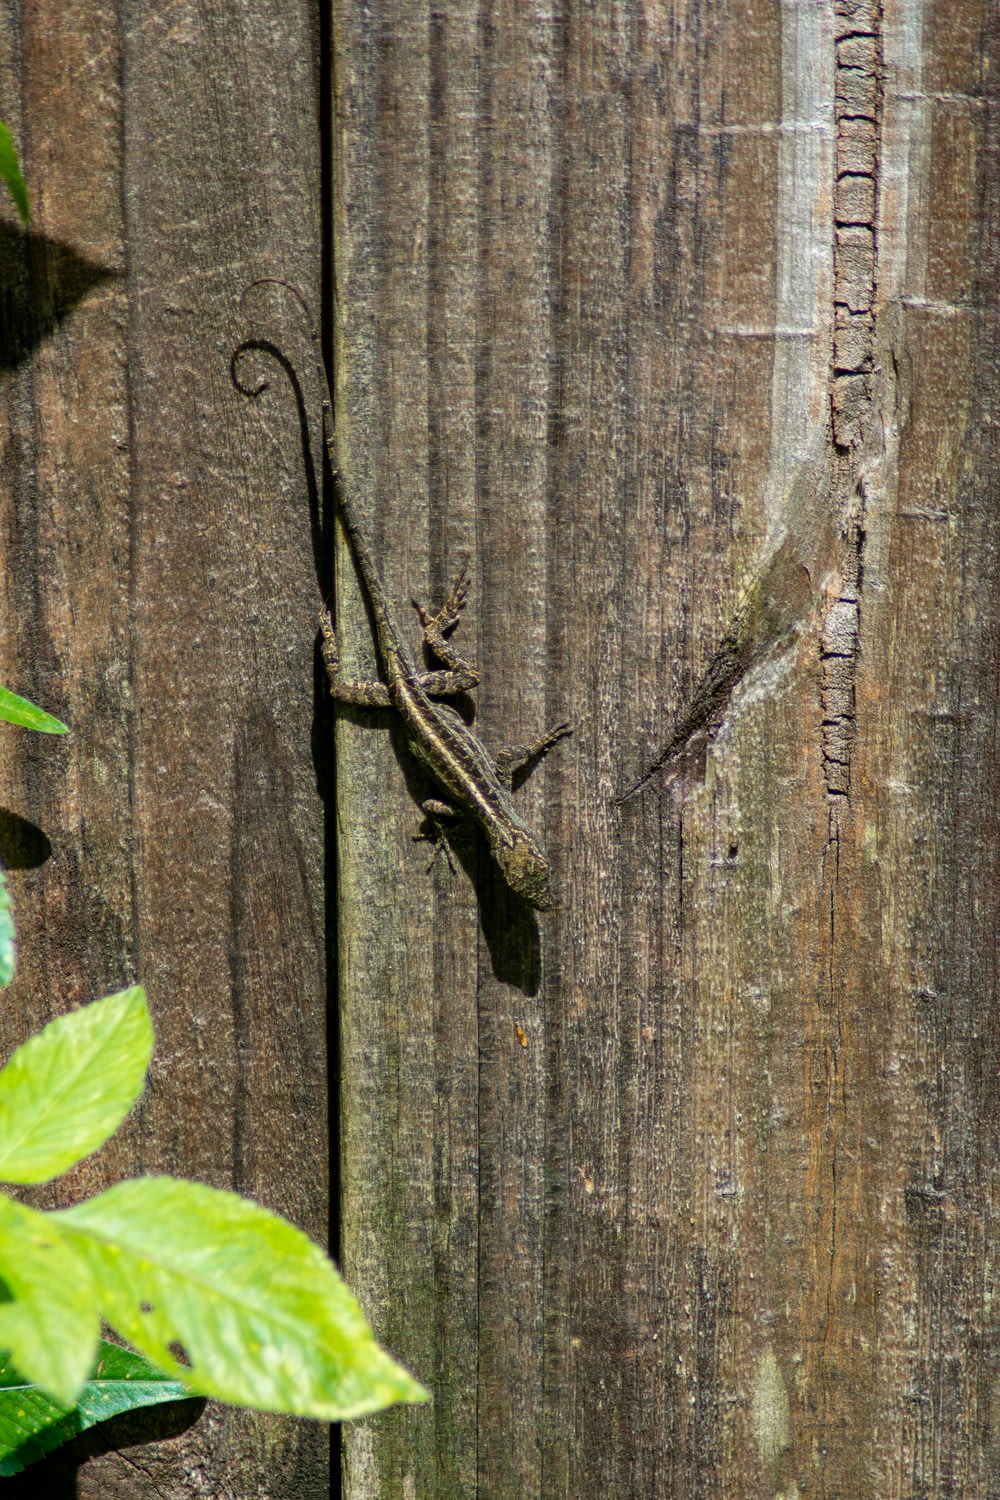 a lizard is climbing up a wooden fence